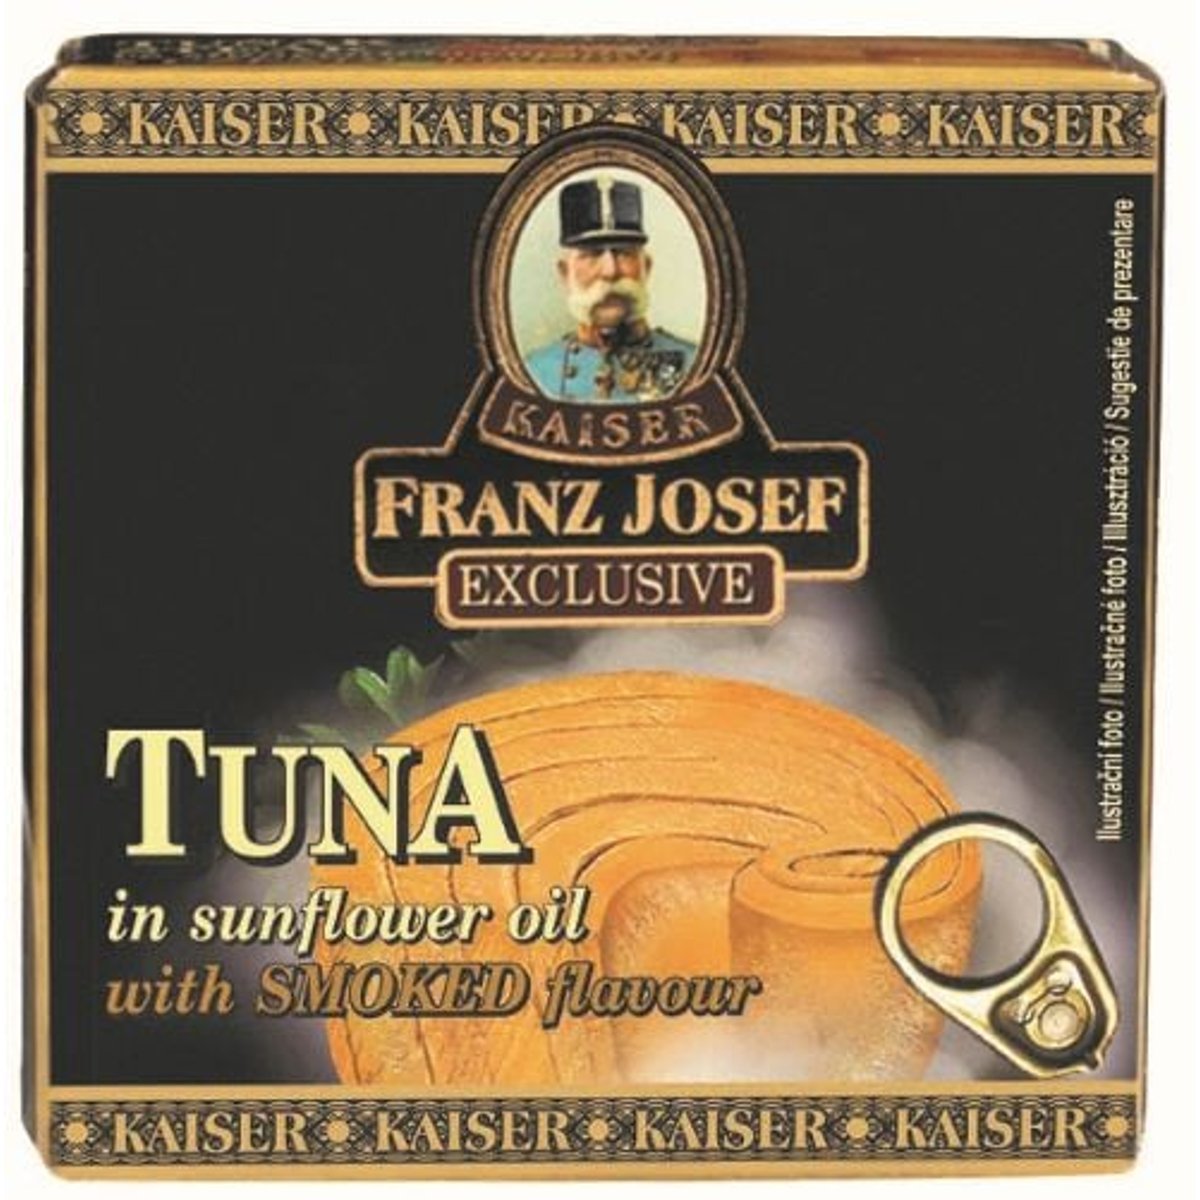 Franz Josef Kaiser Tuňák celý v rostlinném oleji s uzenou příchutí